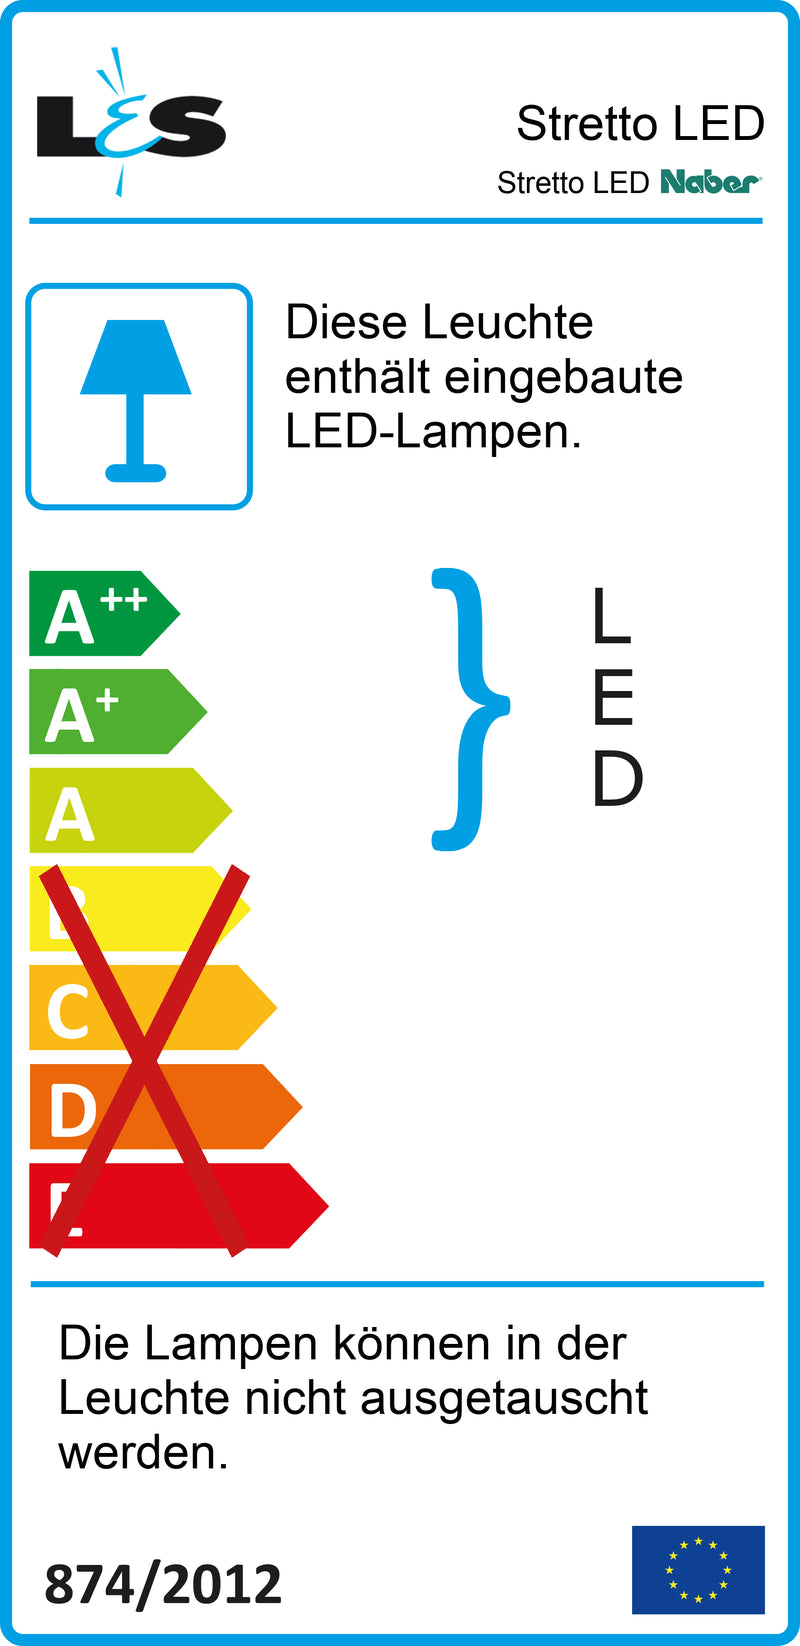 E-Label zu Zeichnung zu Stretto LED als Variante Einzelleuchte ohne Schalter von Naber GmbH in der Kategorie Lichttechnik in Österreich auf conceptshop.at